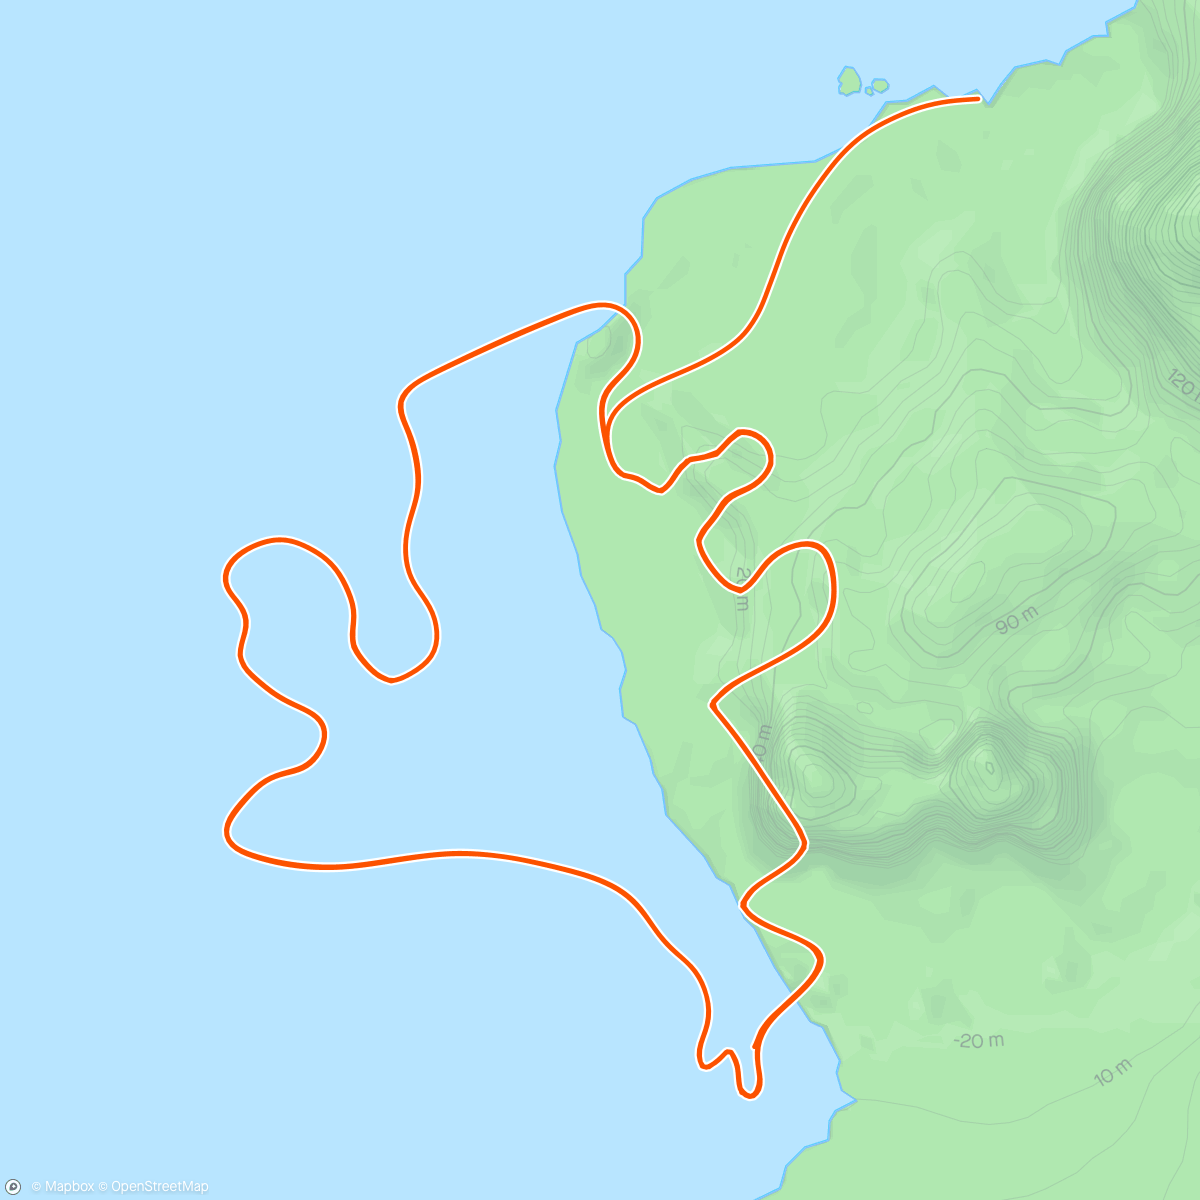 「Zwift - Race: Stage 3: Lap It Up - Seaside Sprint (B) on Seaside Sprint in Watopia」活動的地圖